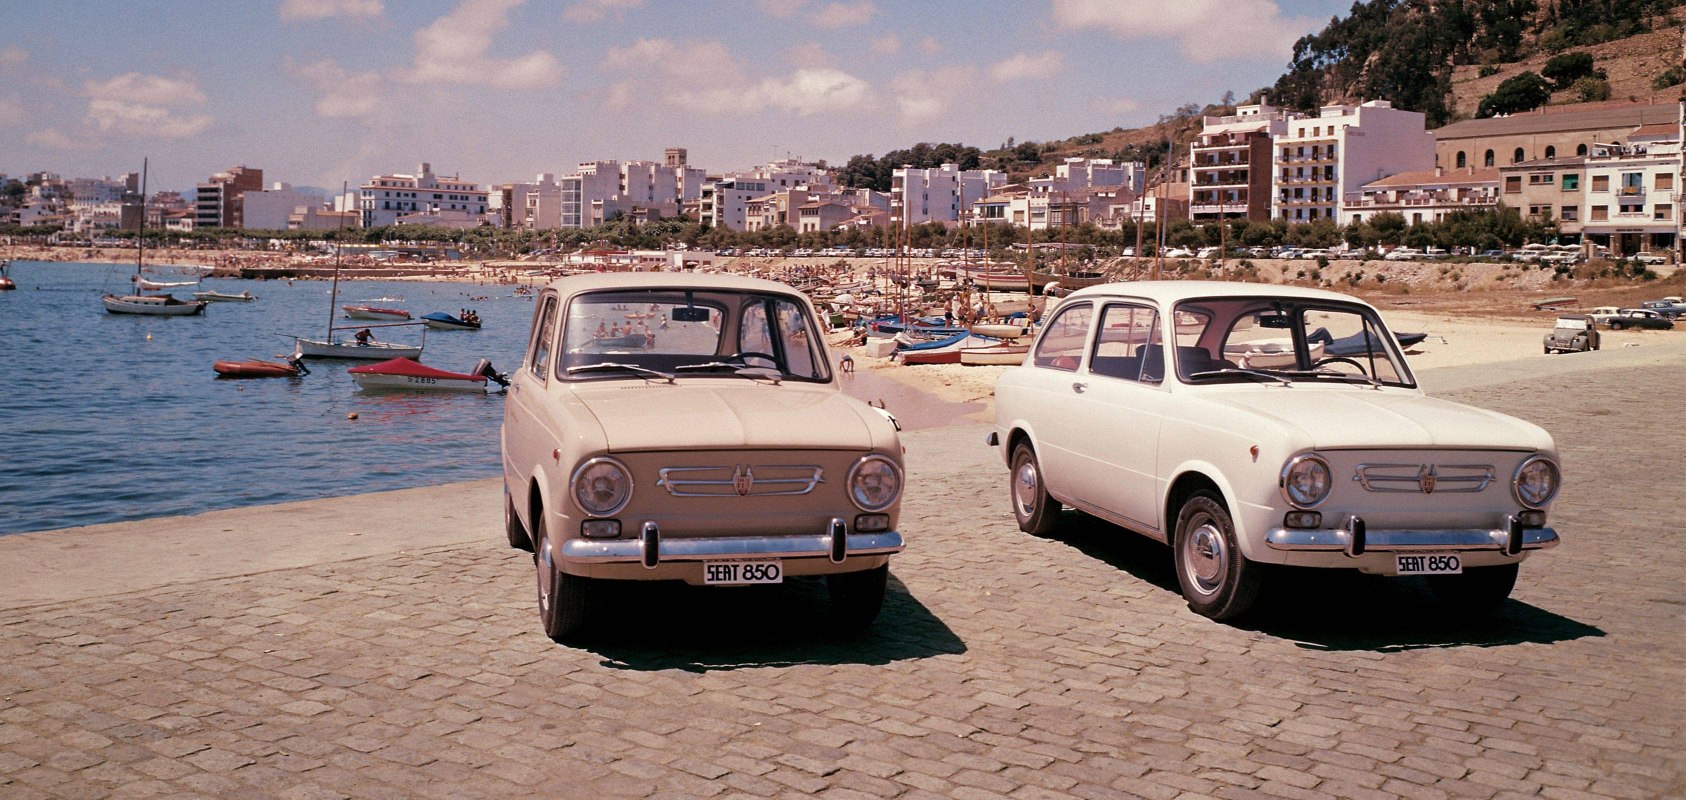 SEAT histoire de la marque 1960s - La voiture SEAT 850 sur une plage